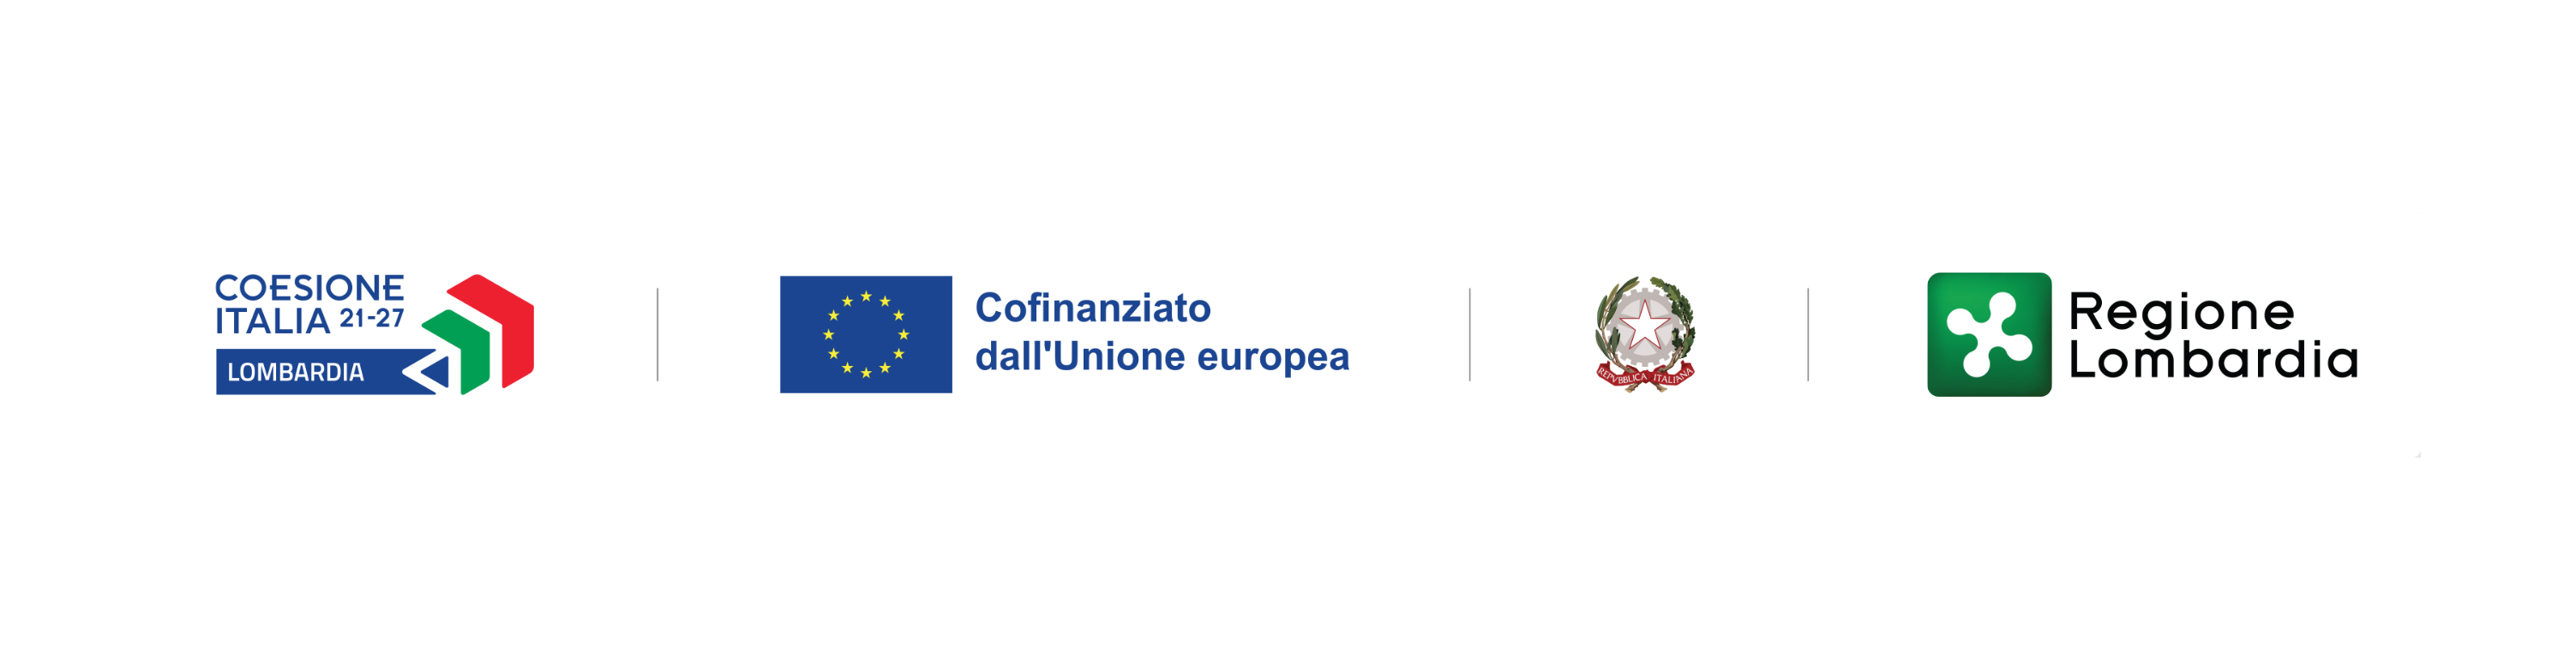 Piano Transizione 5.0 - Nasce in Italia una soluzione per l’efficienza energetica finanziata da Regione Lombardia mediante il Fondo dell'Unione Europea